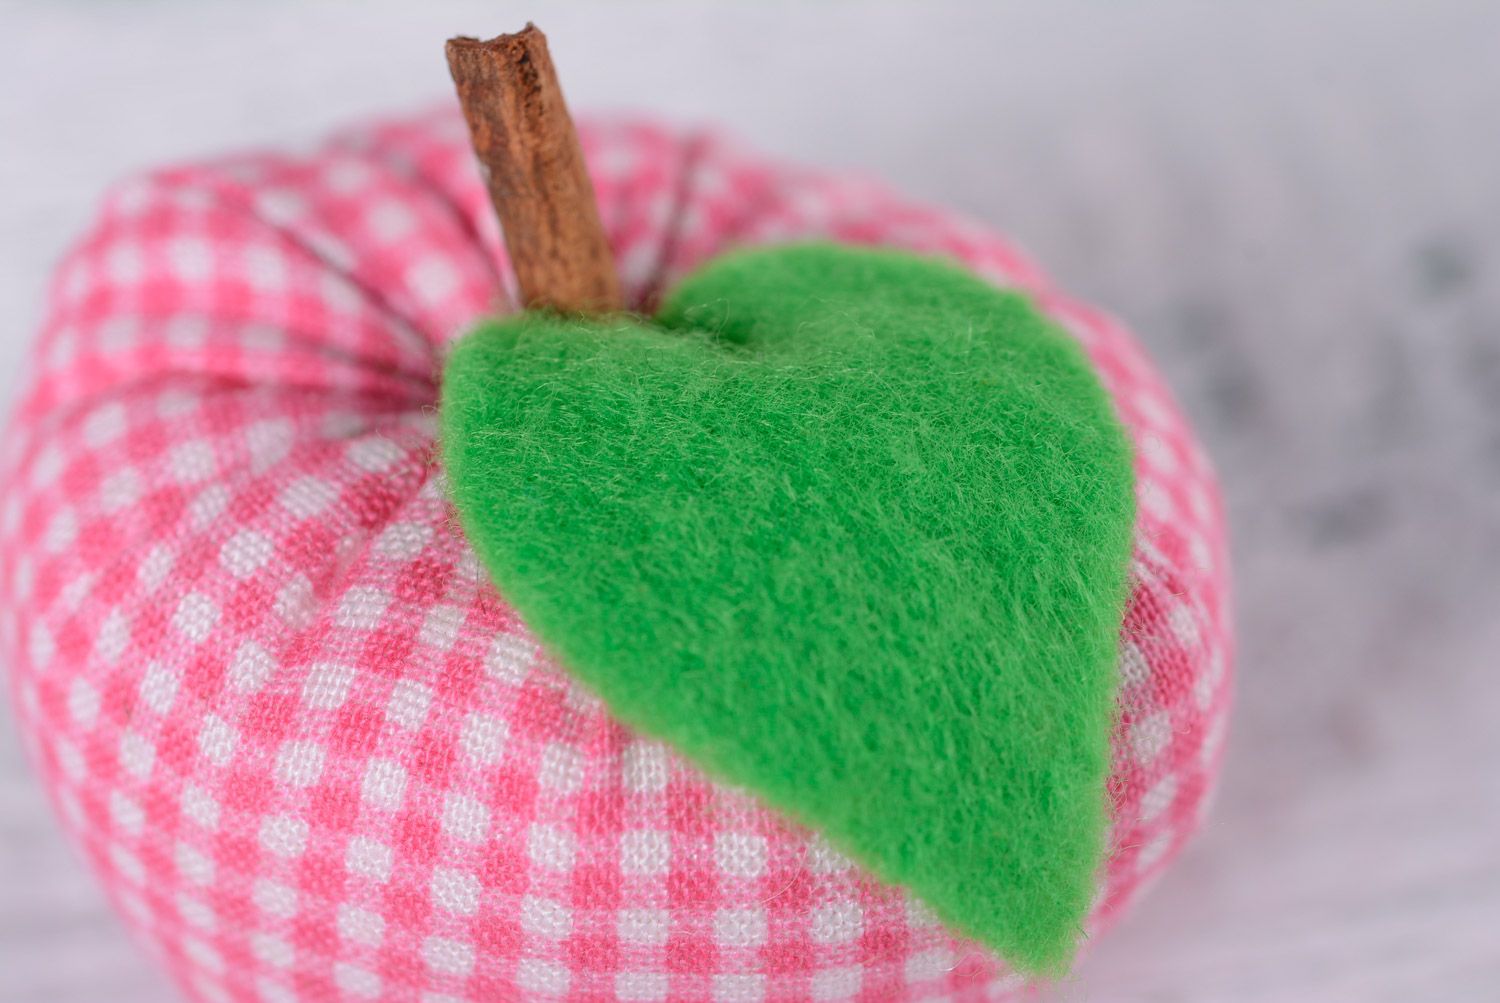 Декоративная игрушка для интерьера в виде маленького яблока мягкая пошитая вручную фото 4